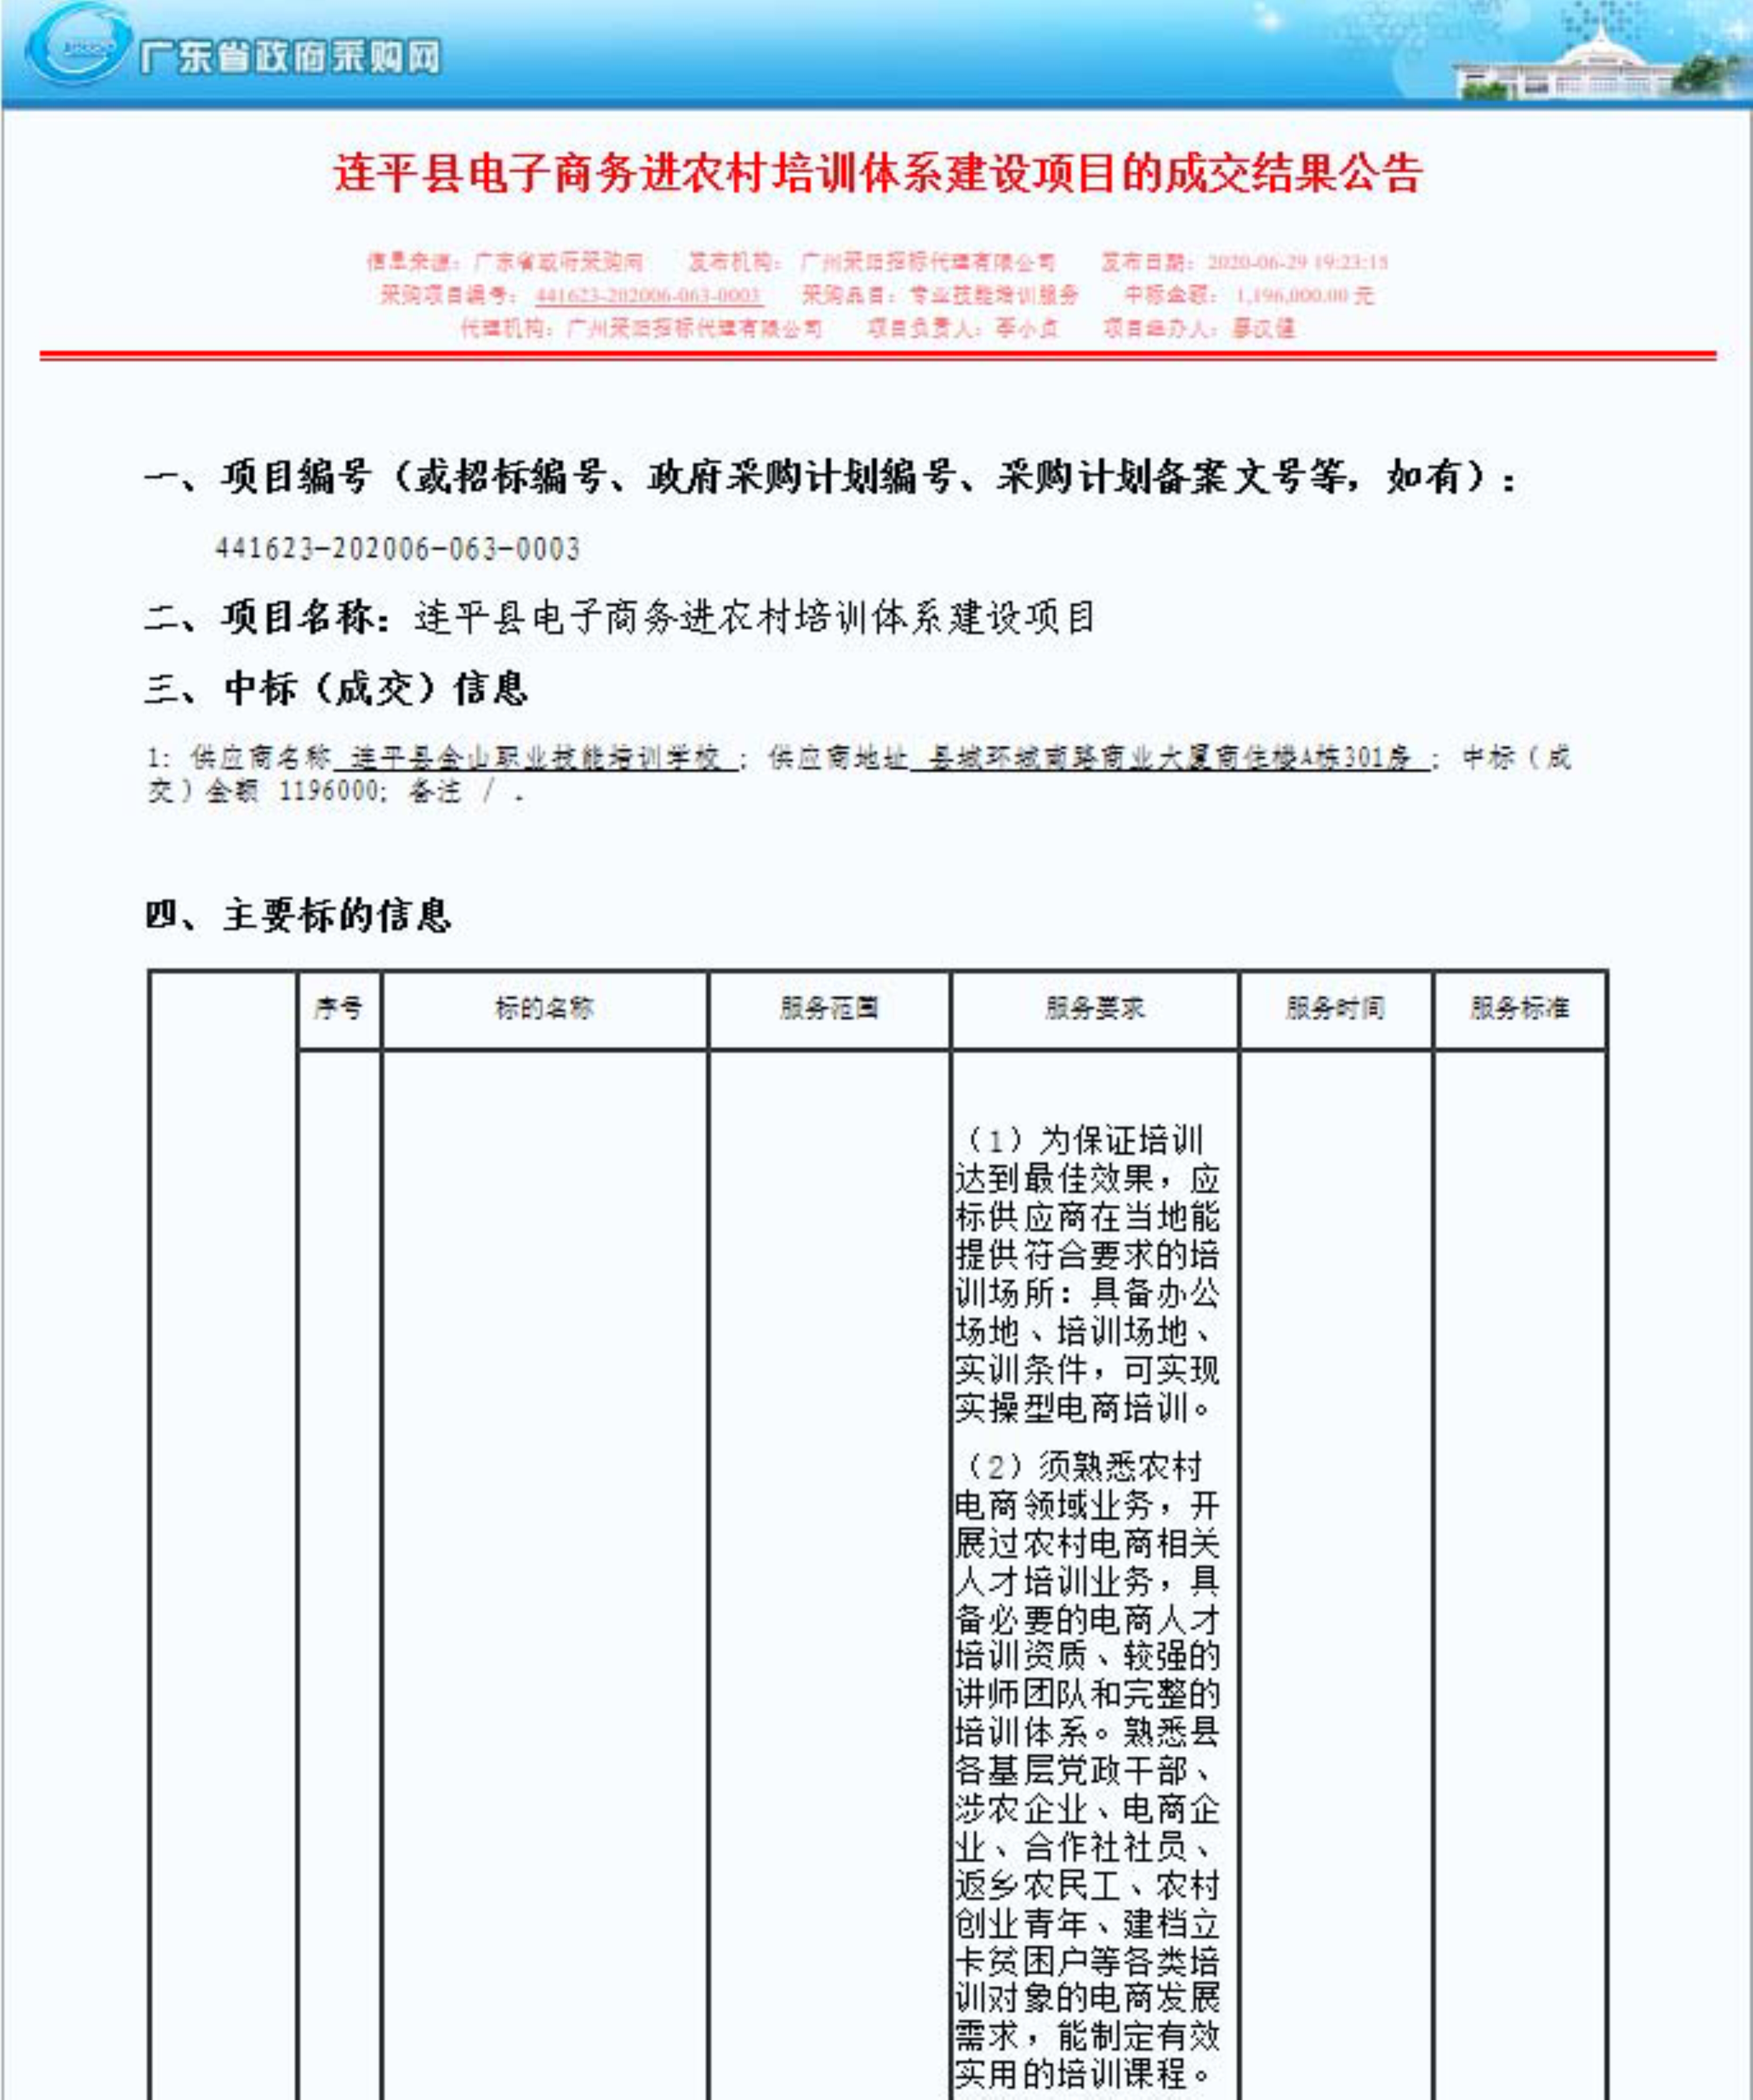 2.连平县电子商务进农村培训体系建设项目的成交结果公告_1.jpg